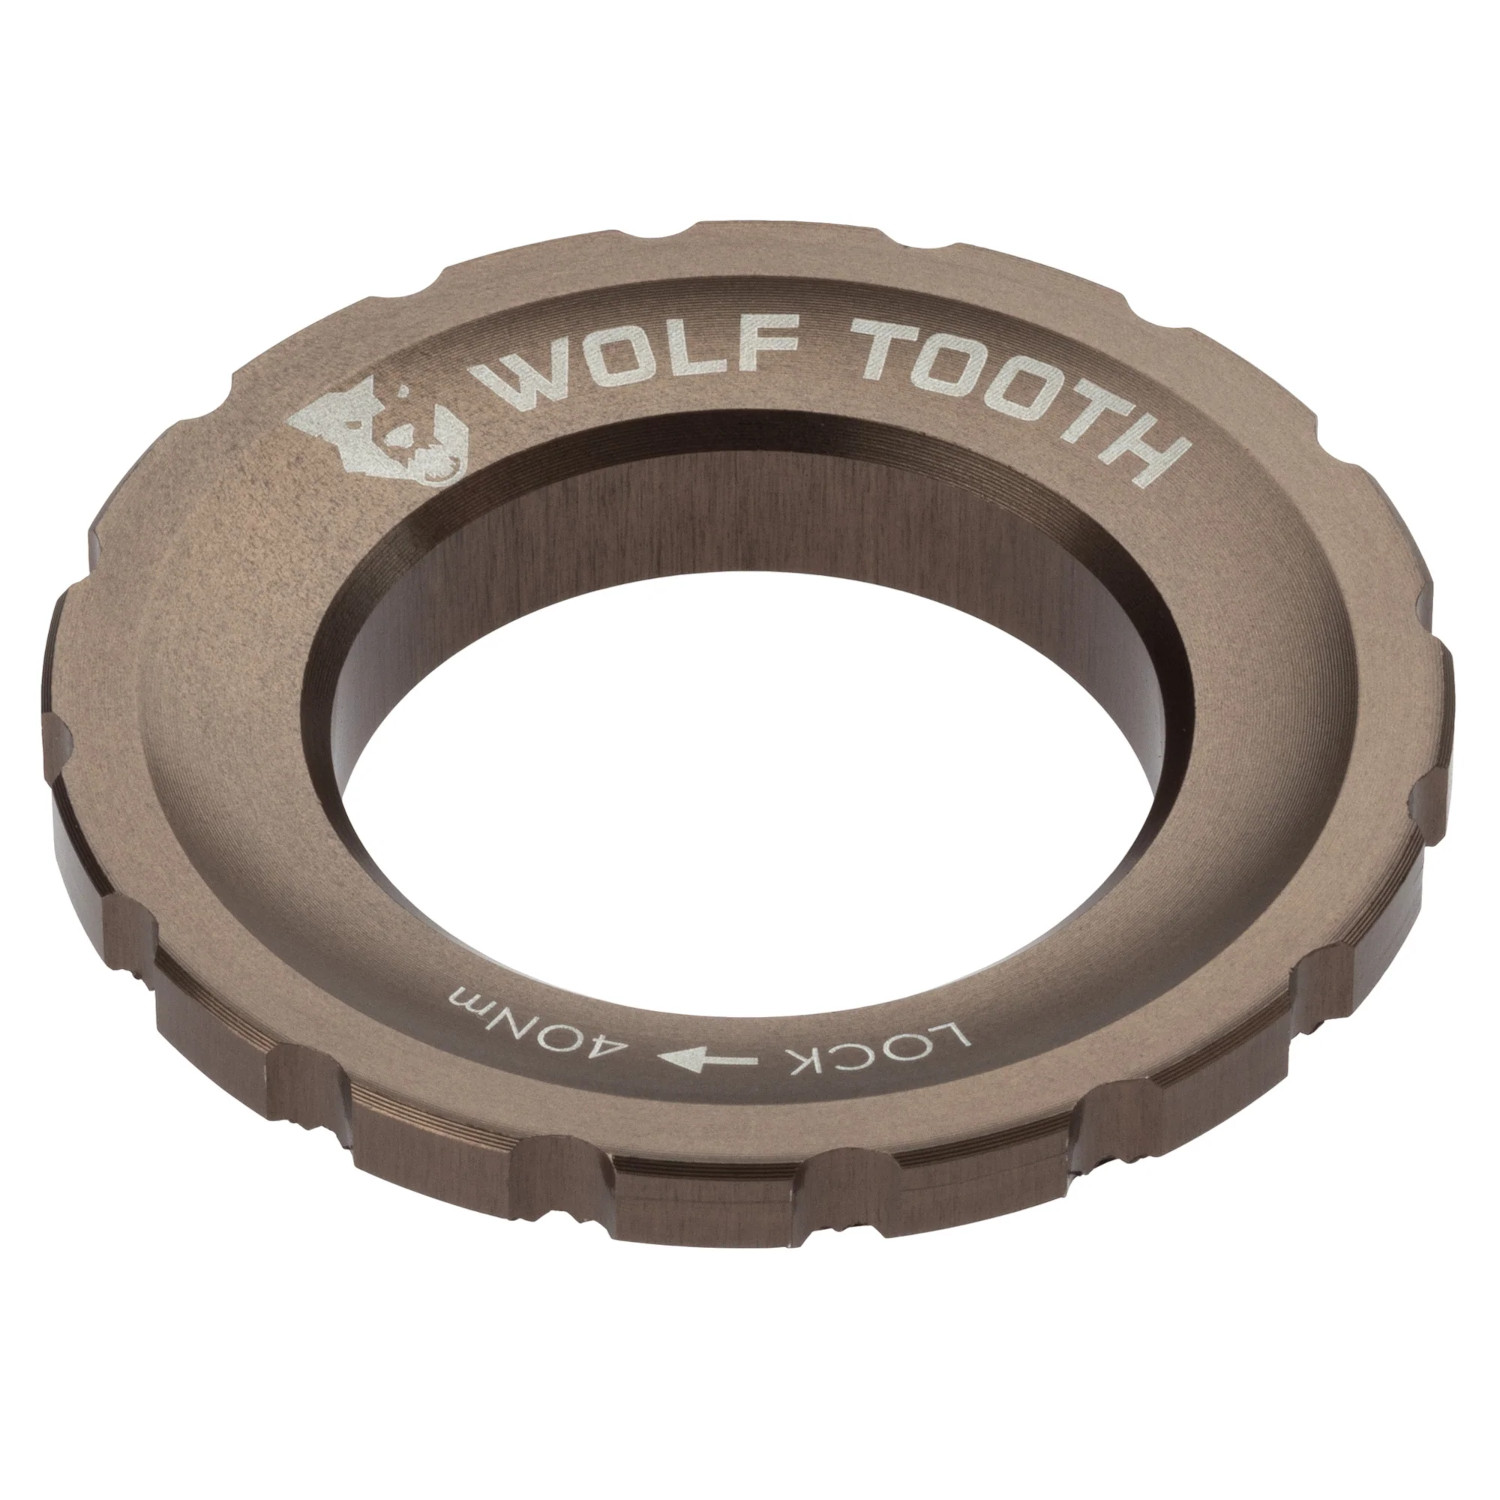 Bild von Wolf Tooth Centerlock Lockring - Außenverzahnung - espresso